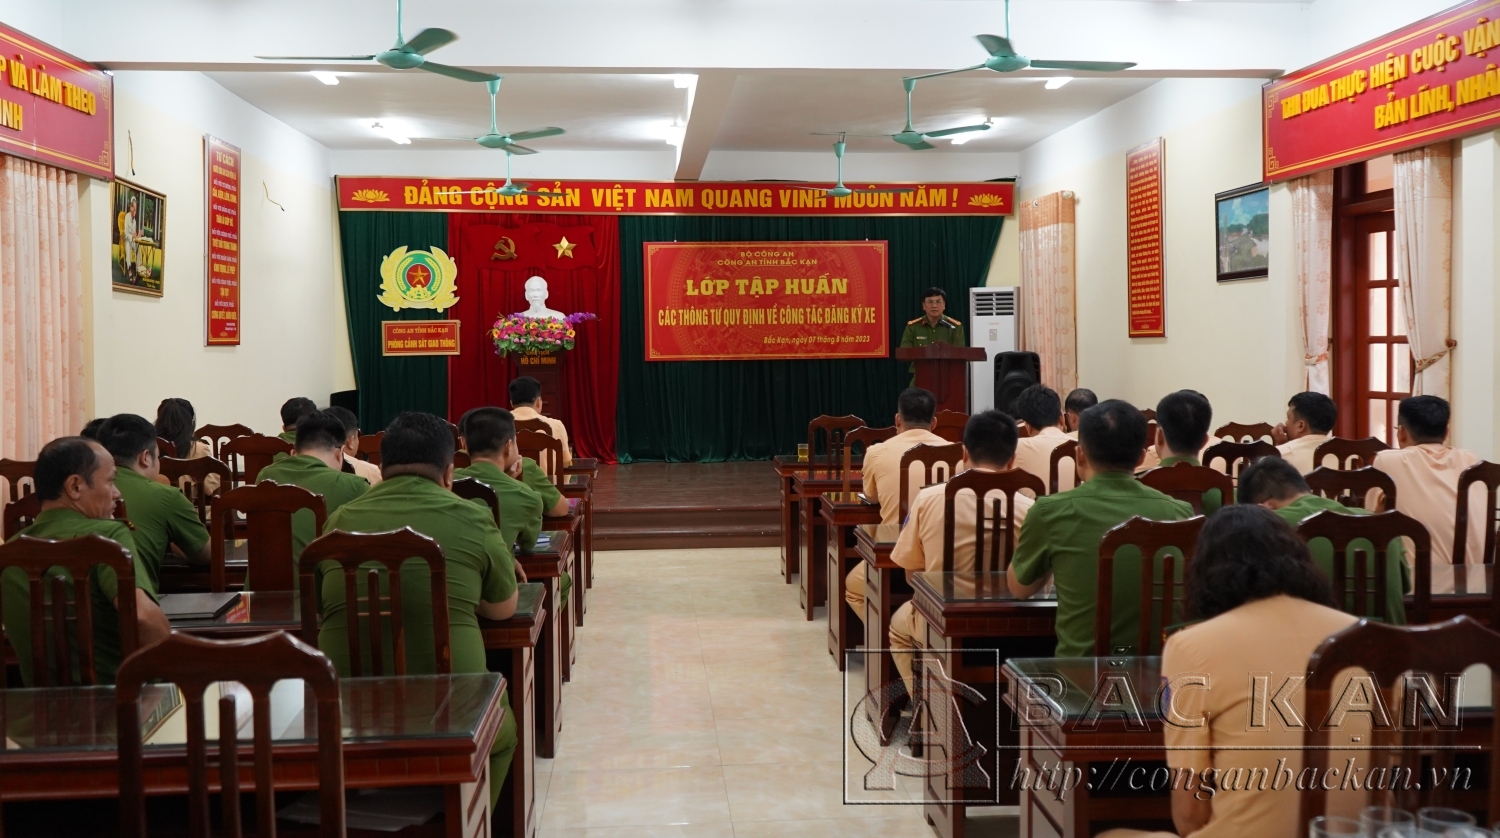  Đại tá Nguyễn Thanh Tuân – Phó Giám đốc Công an tỉnh dự và chỉ đạo lớp tập huấn.